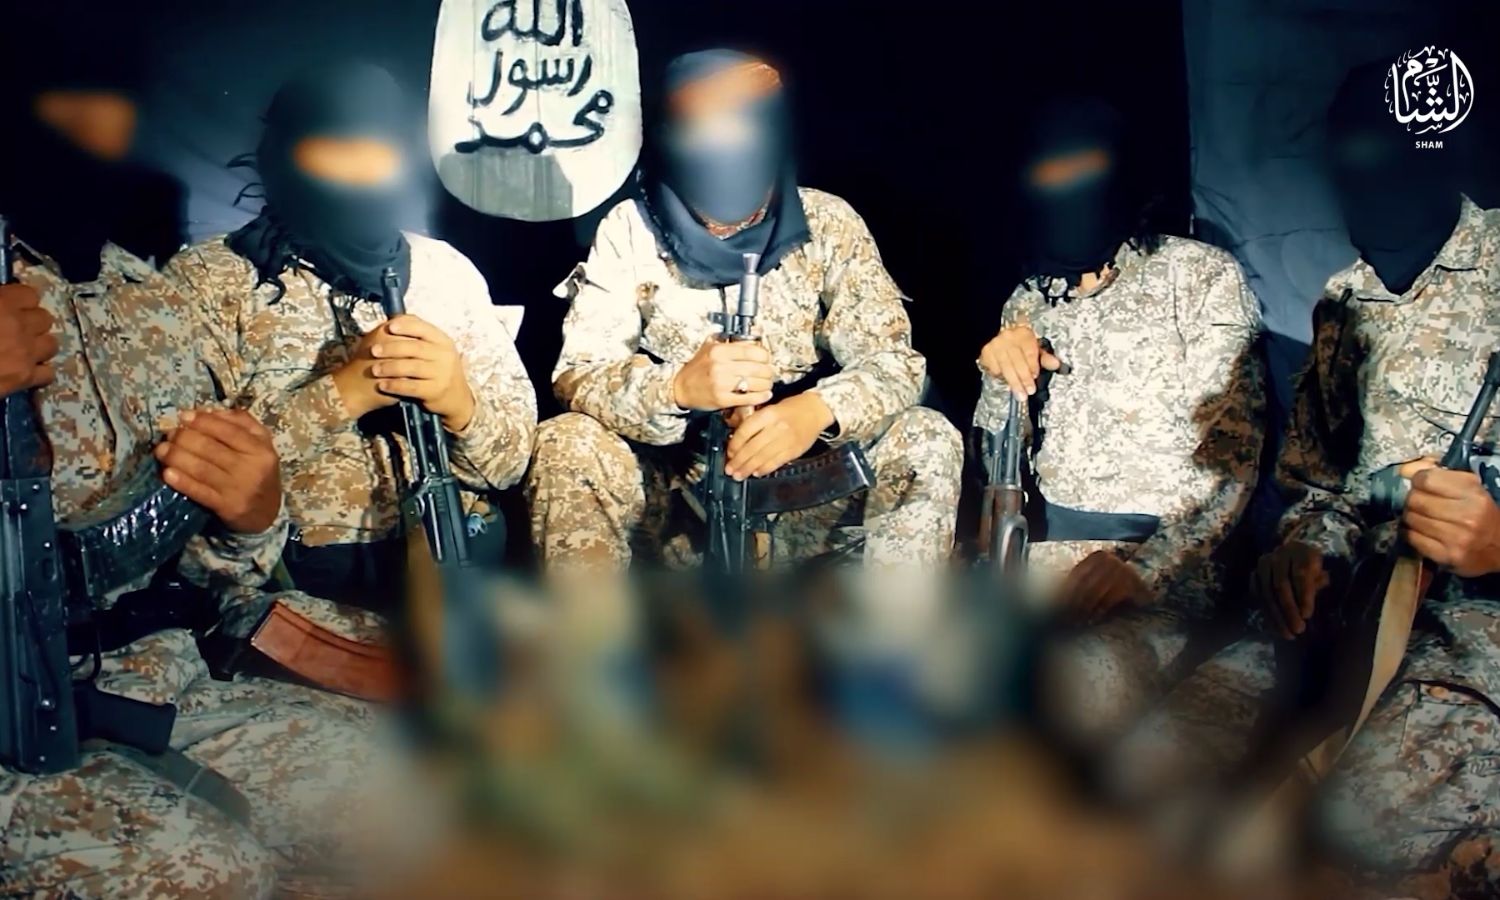 مقاتلون من تنظيم "الدولة الإسلامية" في سوريا (معرف التنظيم على تيلجرام)